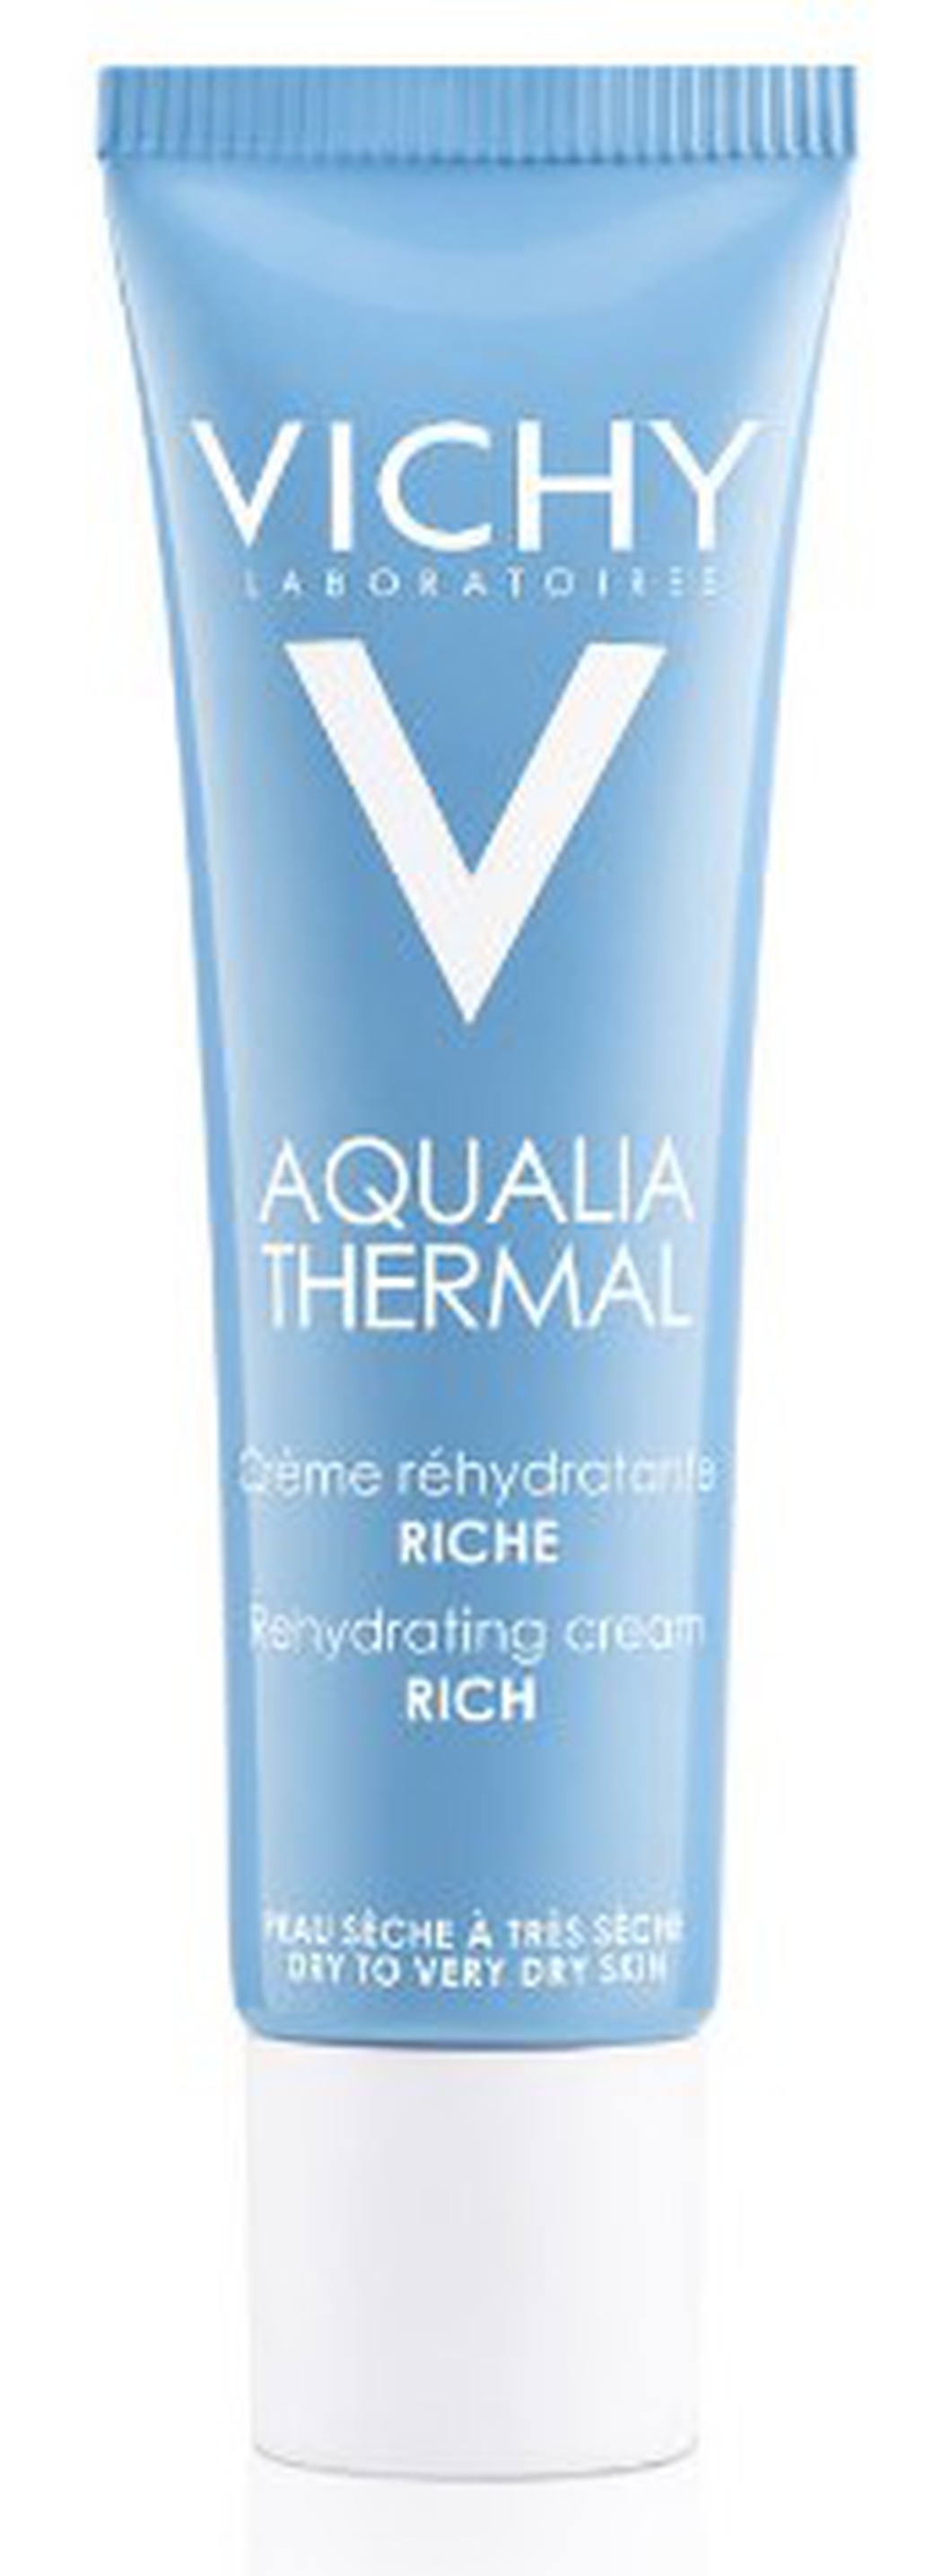 Vichy Aqualia Thermal крем насыщенный для сухой и очень сухой кожи, 30мл фото